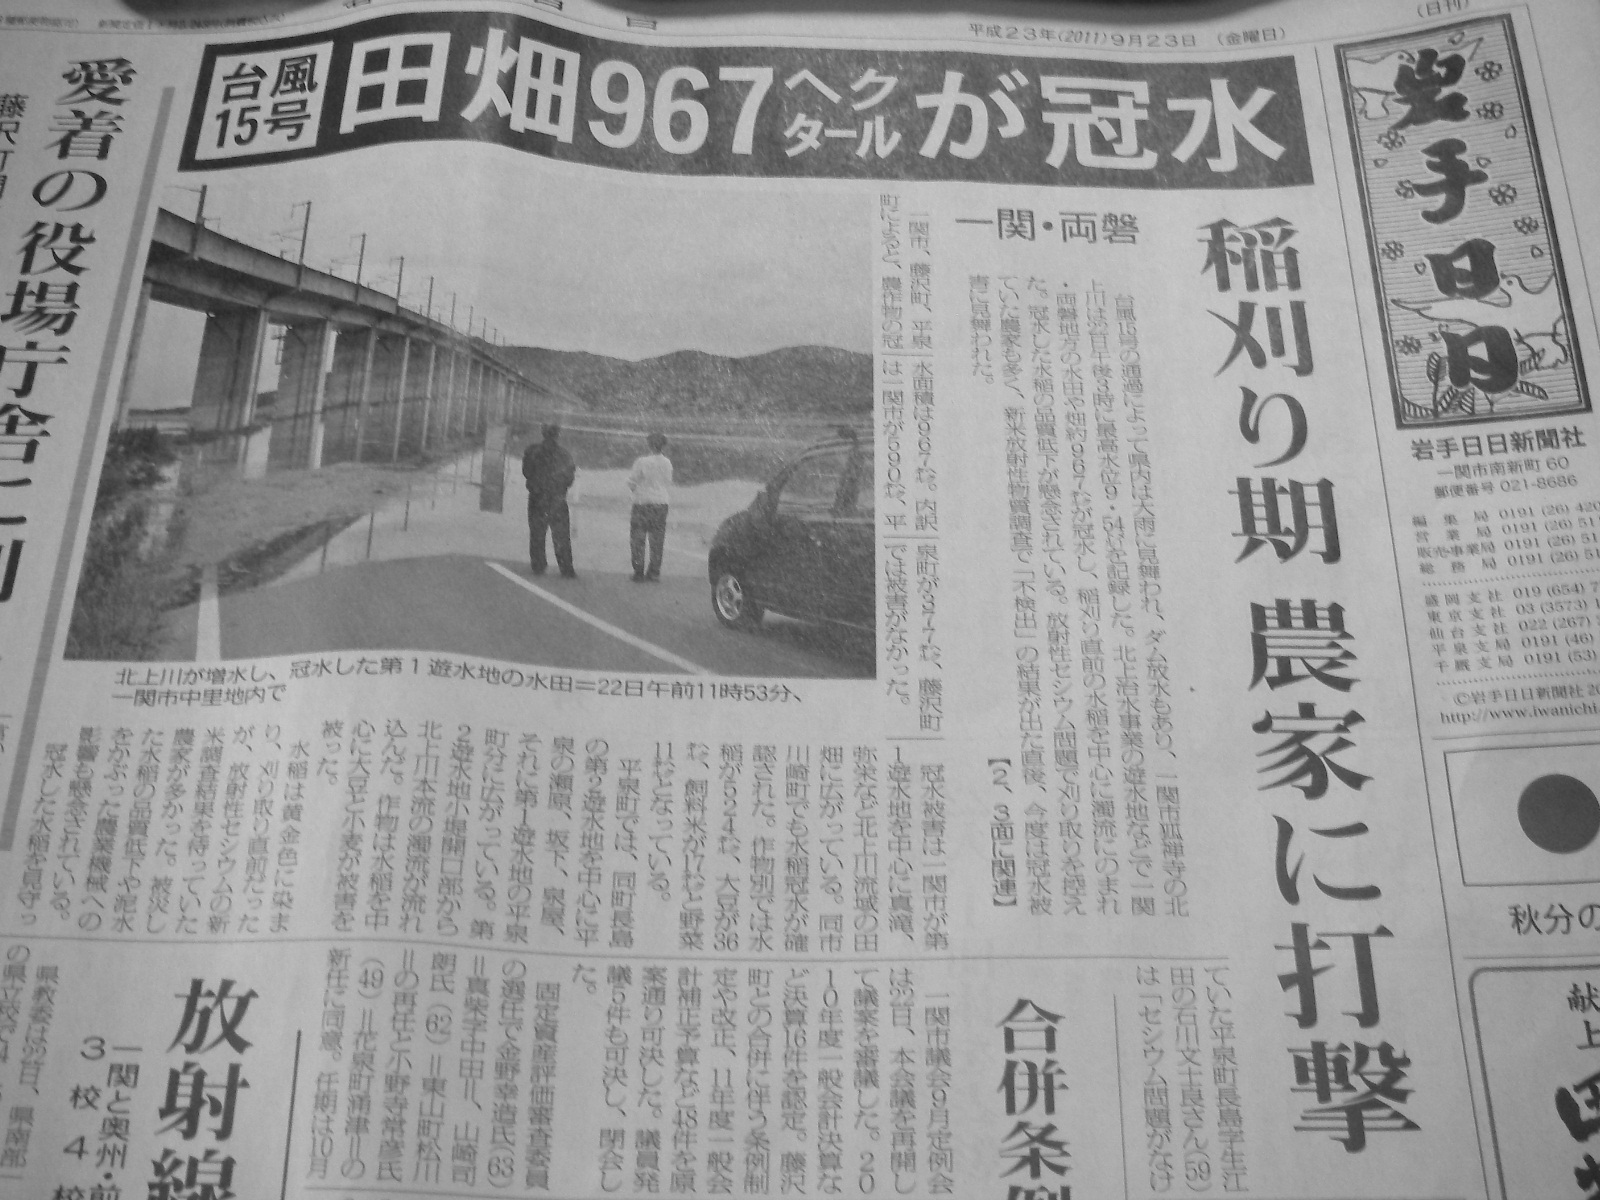 平成２３年秋分の日台風１５号一関遊水池の記事、岩手日日